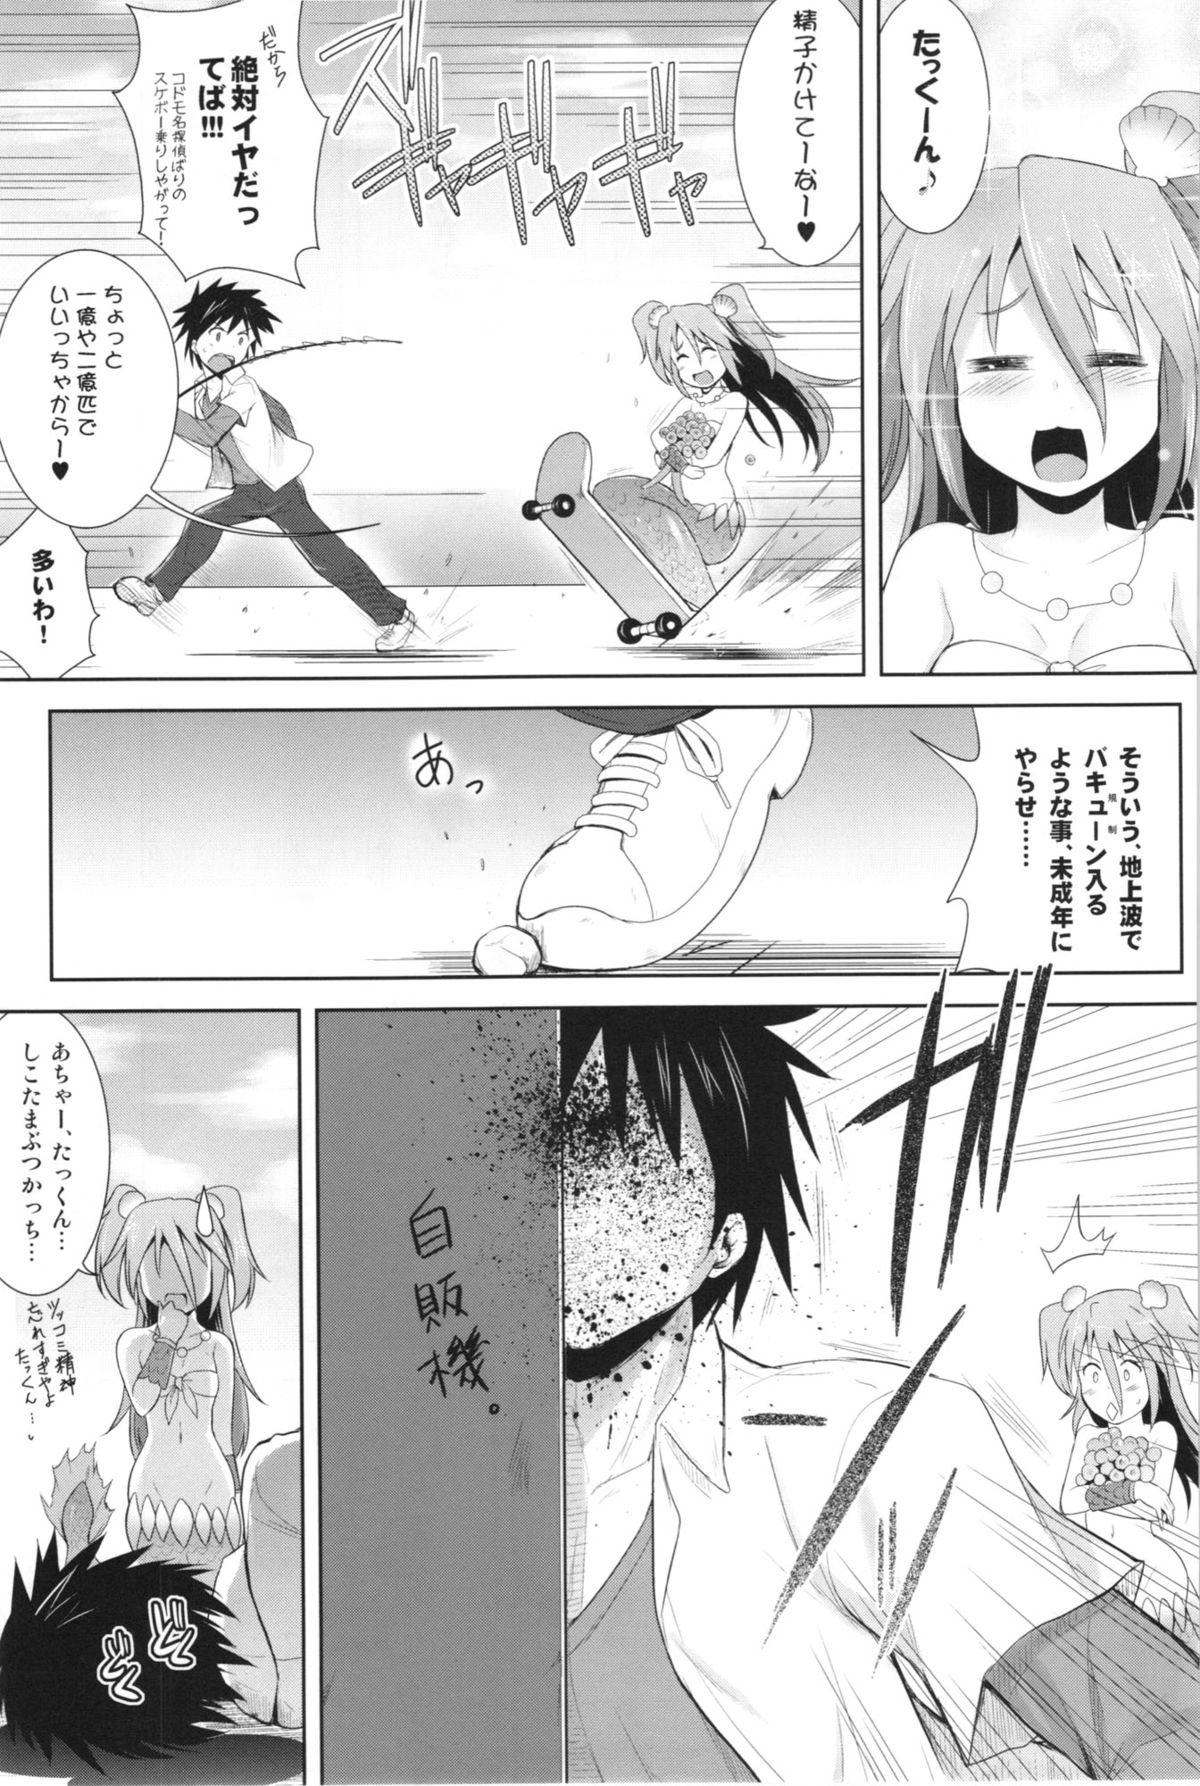 Bisexual Setouchi no Muromi-san - Namiuchigiwa no muromi-san Spying - Page 7